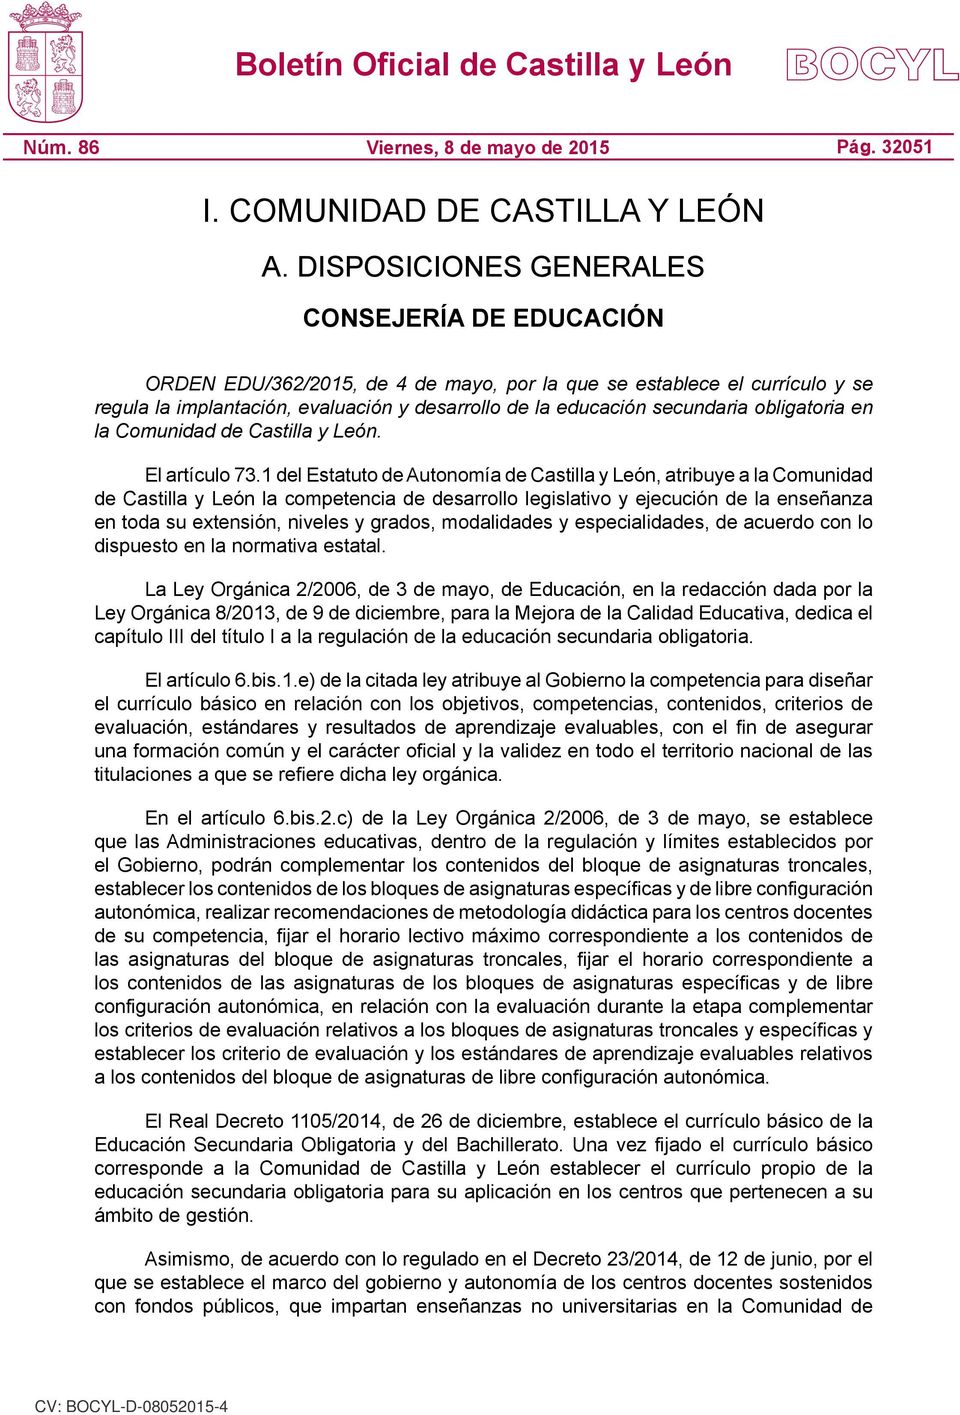 obligatoria en la Comunidad de Castilla y León. El artículo 73.